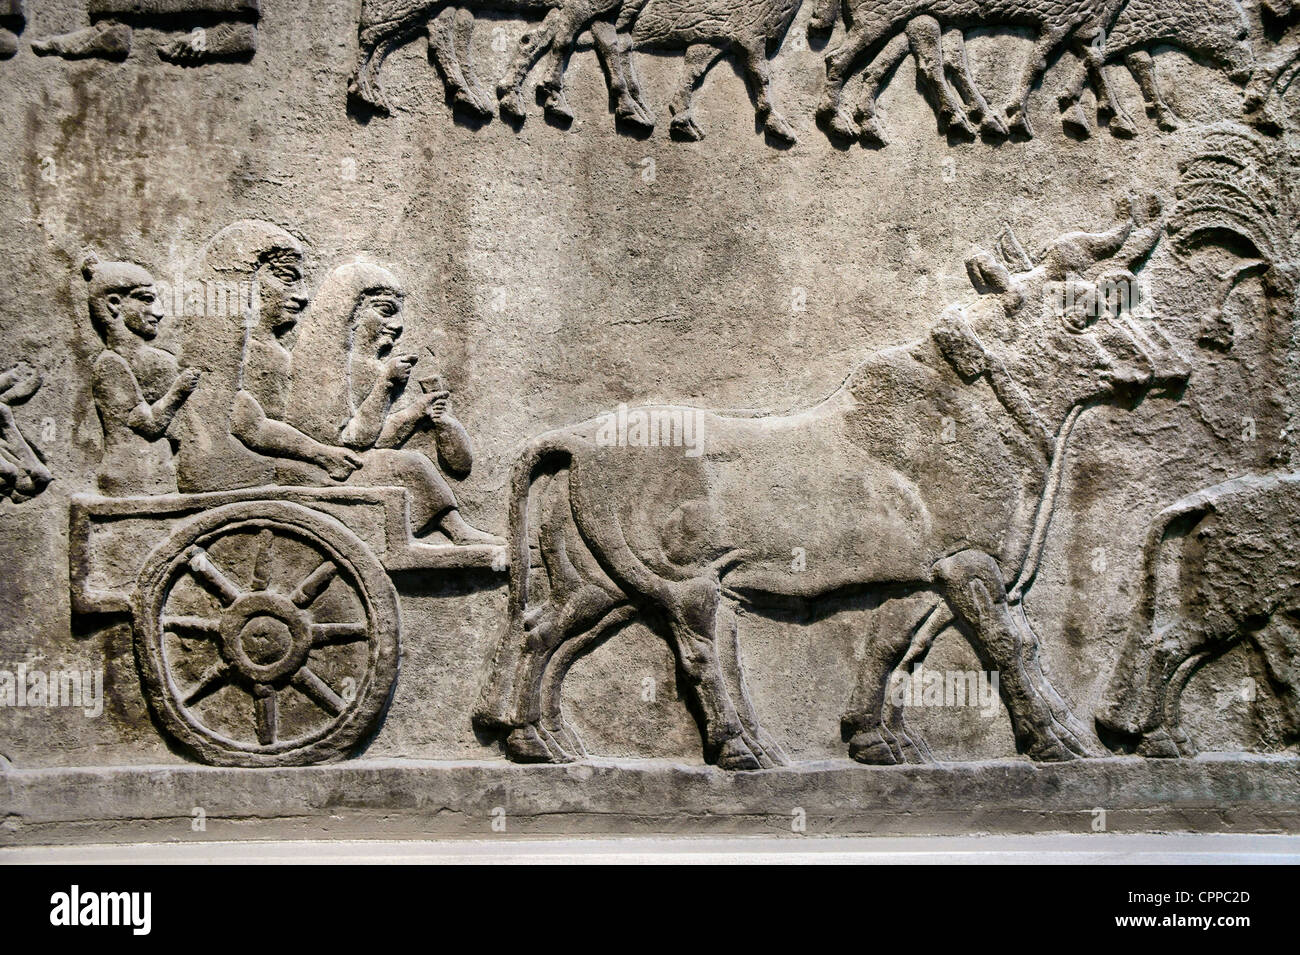 8 ème C. BC panneau assyrien, Palais Central, Nimrud, de l'Iraq. Les civils quittent la ville de migrations forcées. British Museum, Londres Banque D'Images